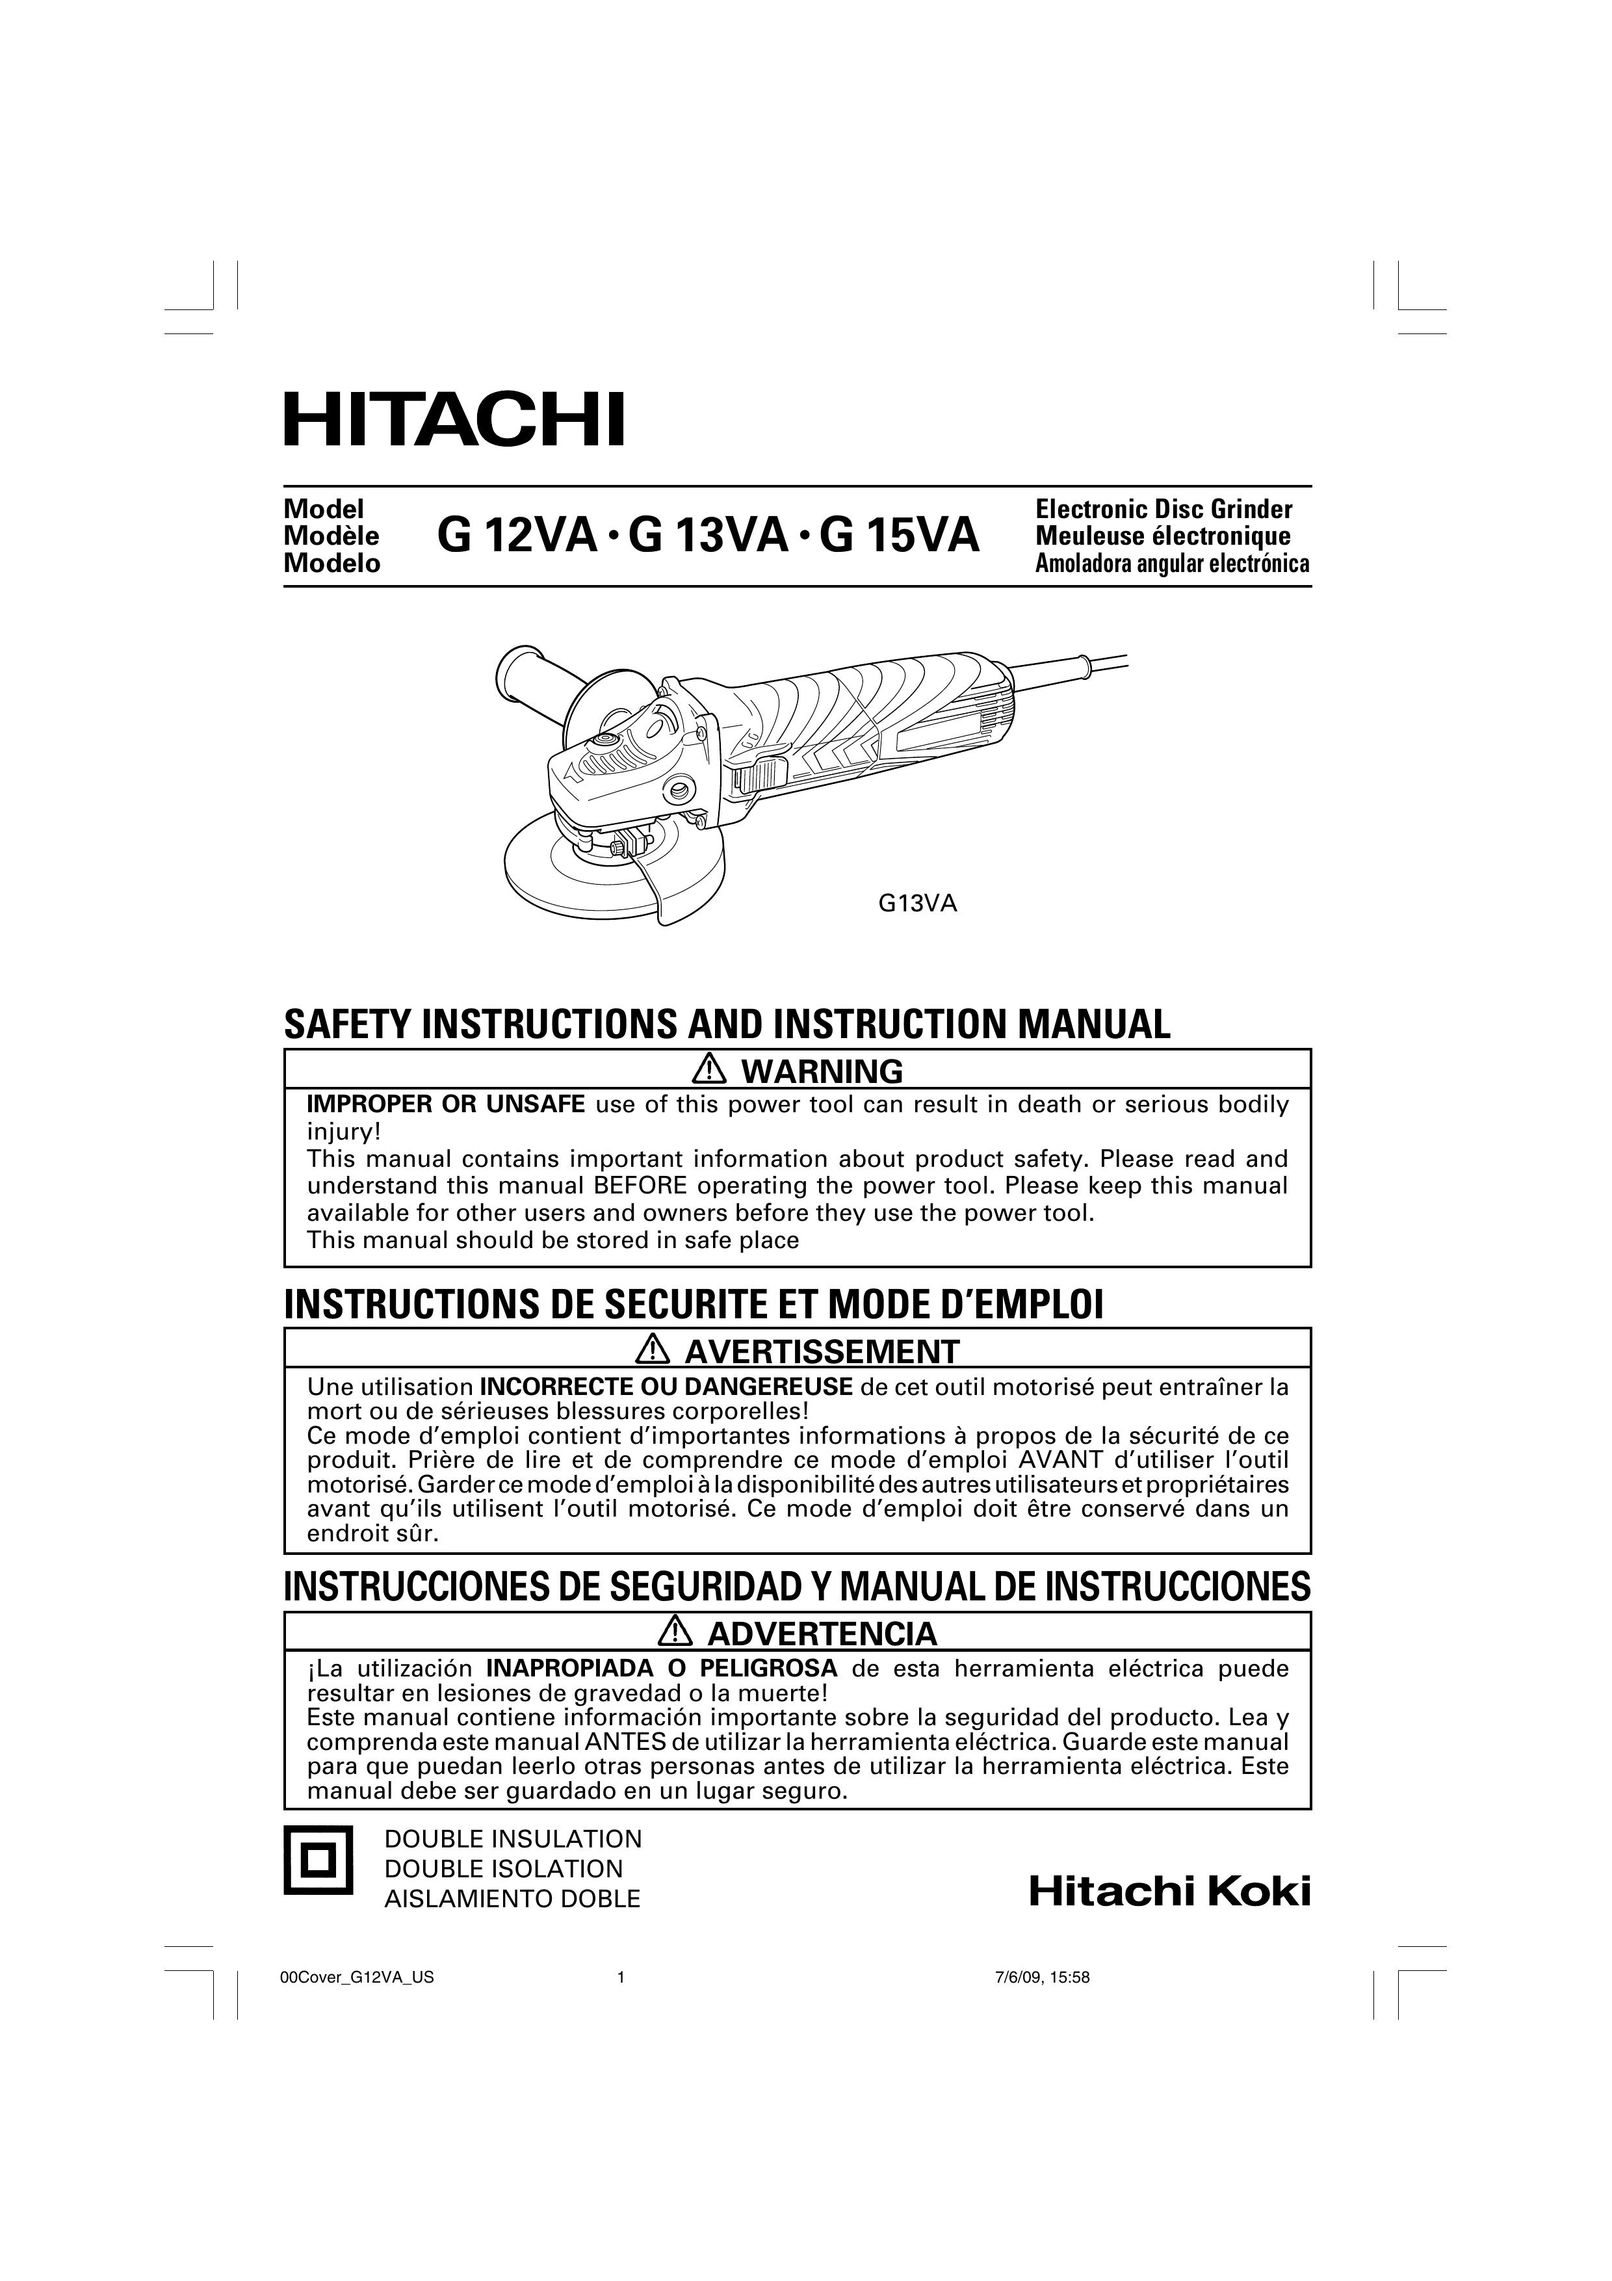 Hitachi electric disc grinder Grinder User Manual